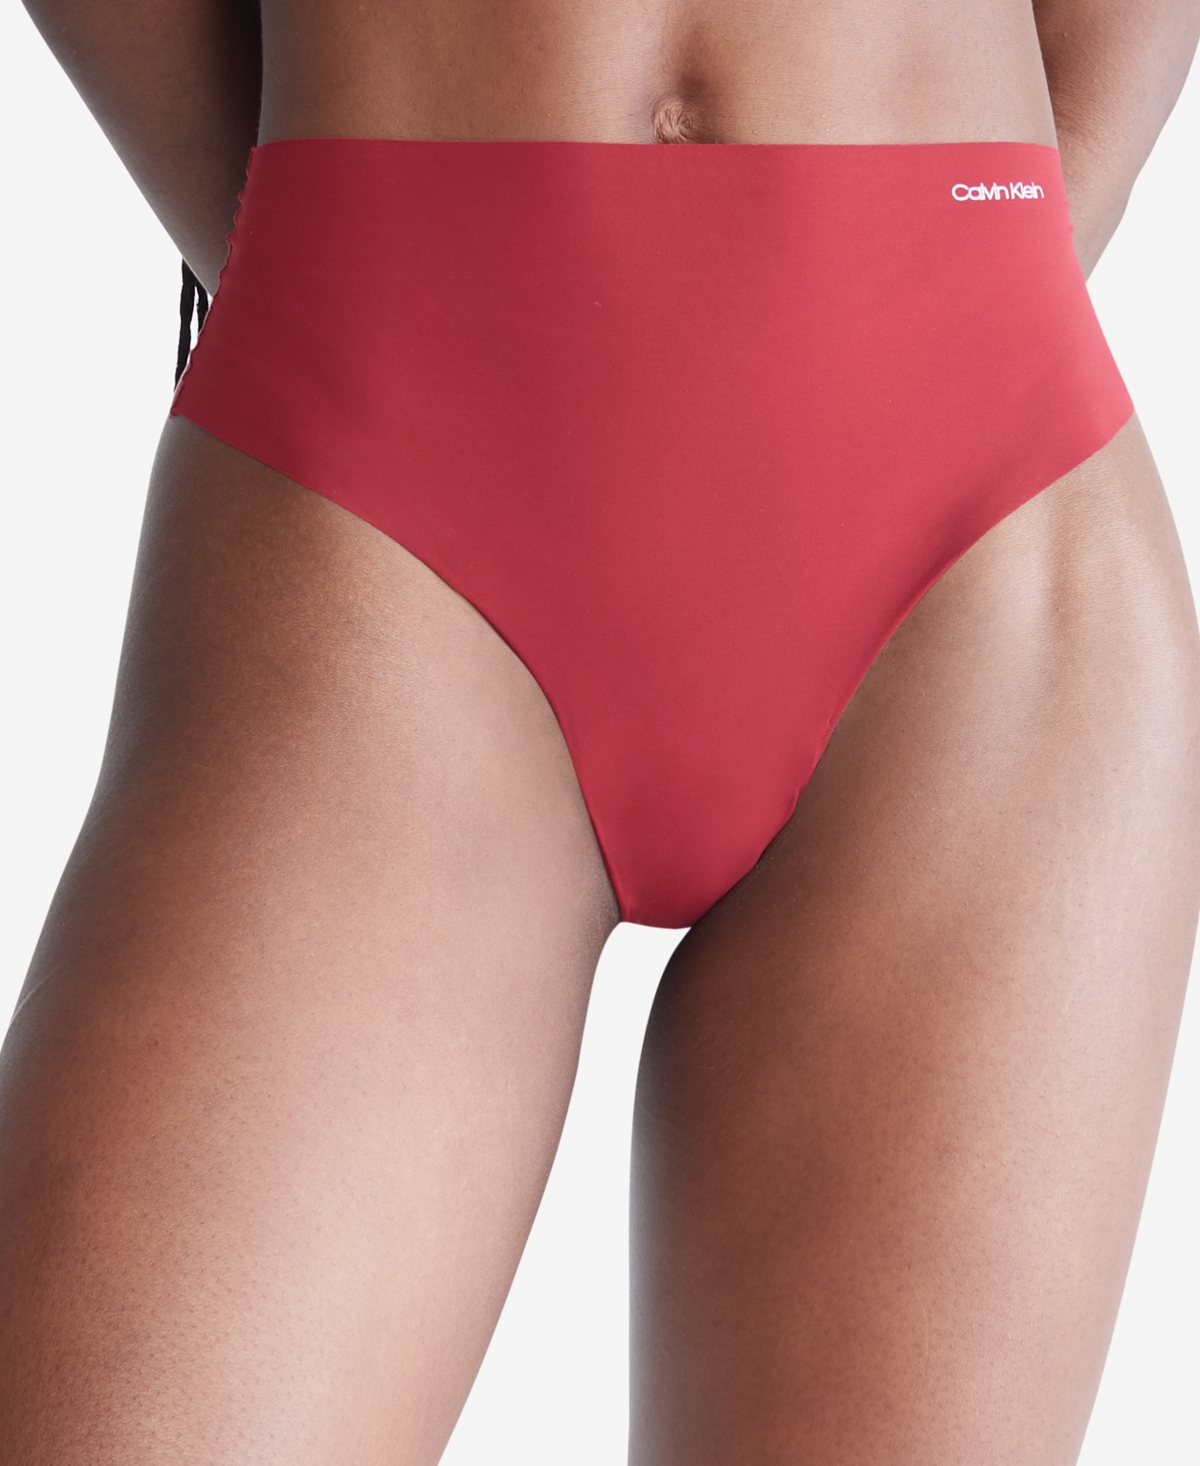 Calvin Klein Women's Invisibles High-waist Thong Underwear Qd3864 In Red  Carpet